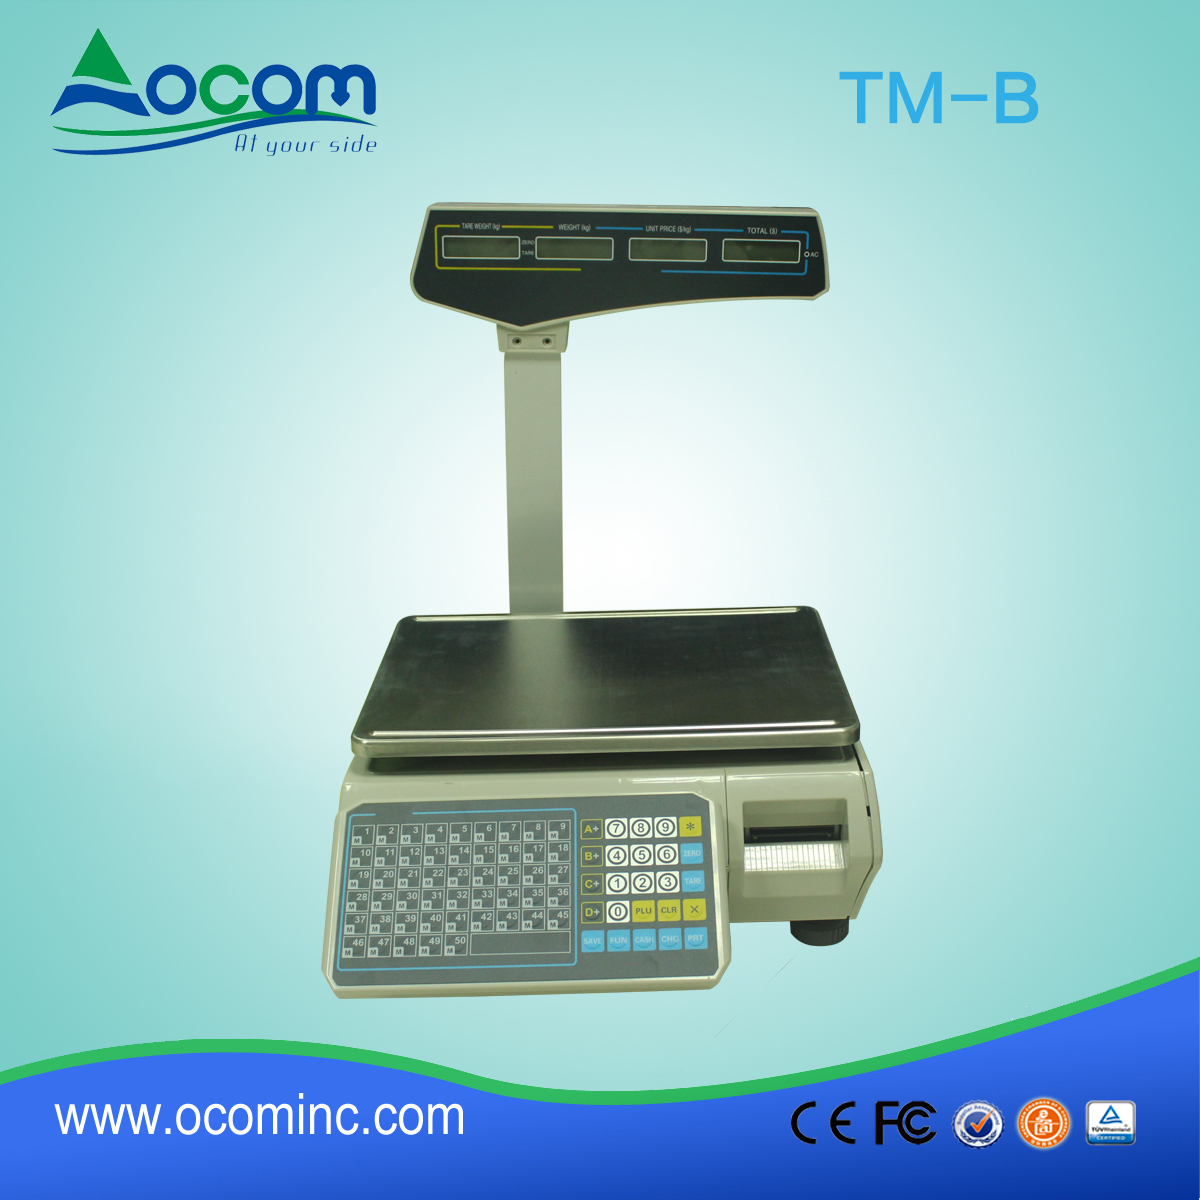 TM-B 30kg wag elektronicznych skali z drukarki etykiet i interfejsu sieci Lan